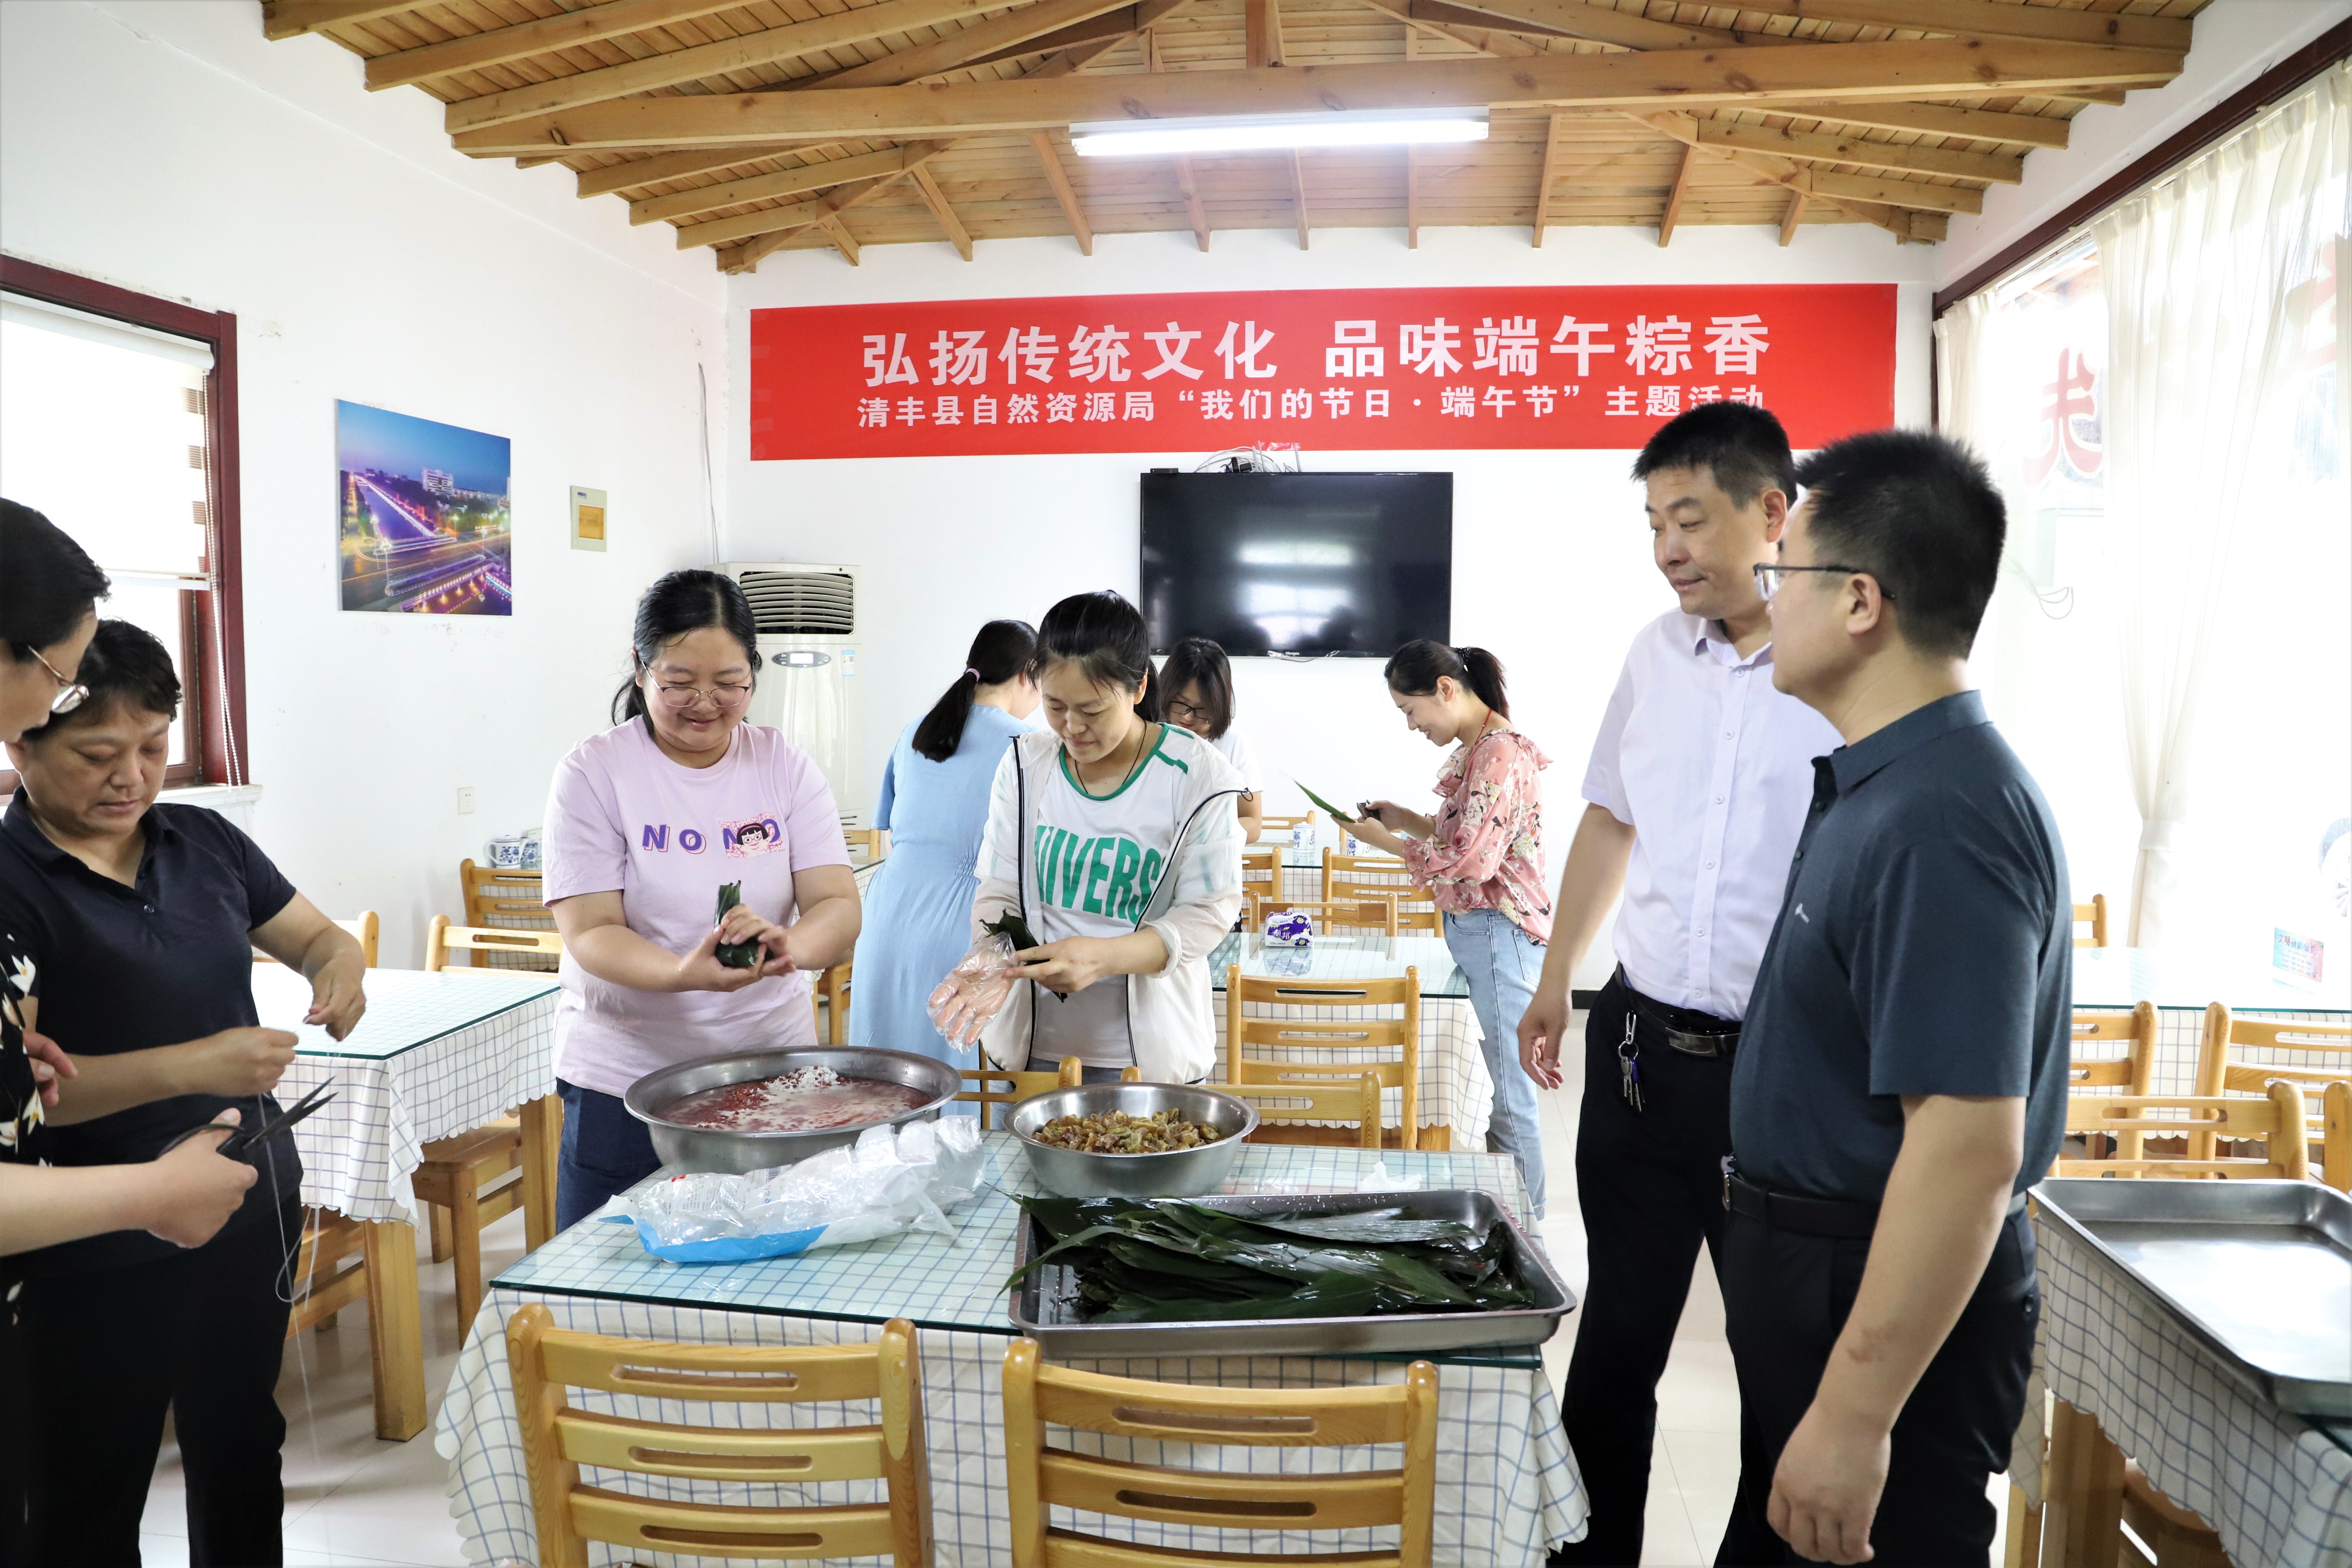 清丰县自然资源局举办“我们的节日·端午节”包粽子活动 